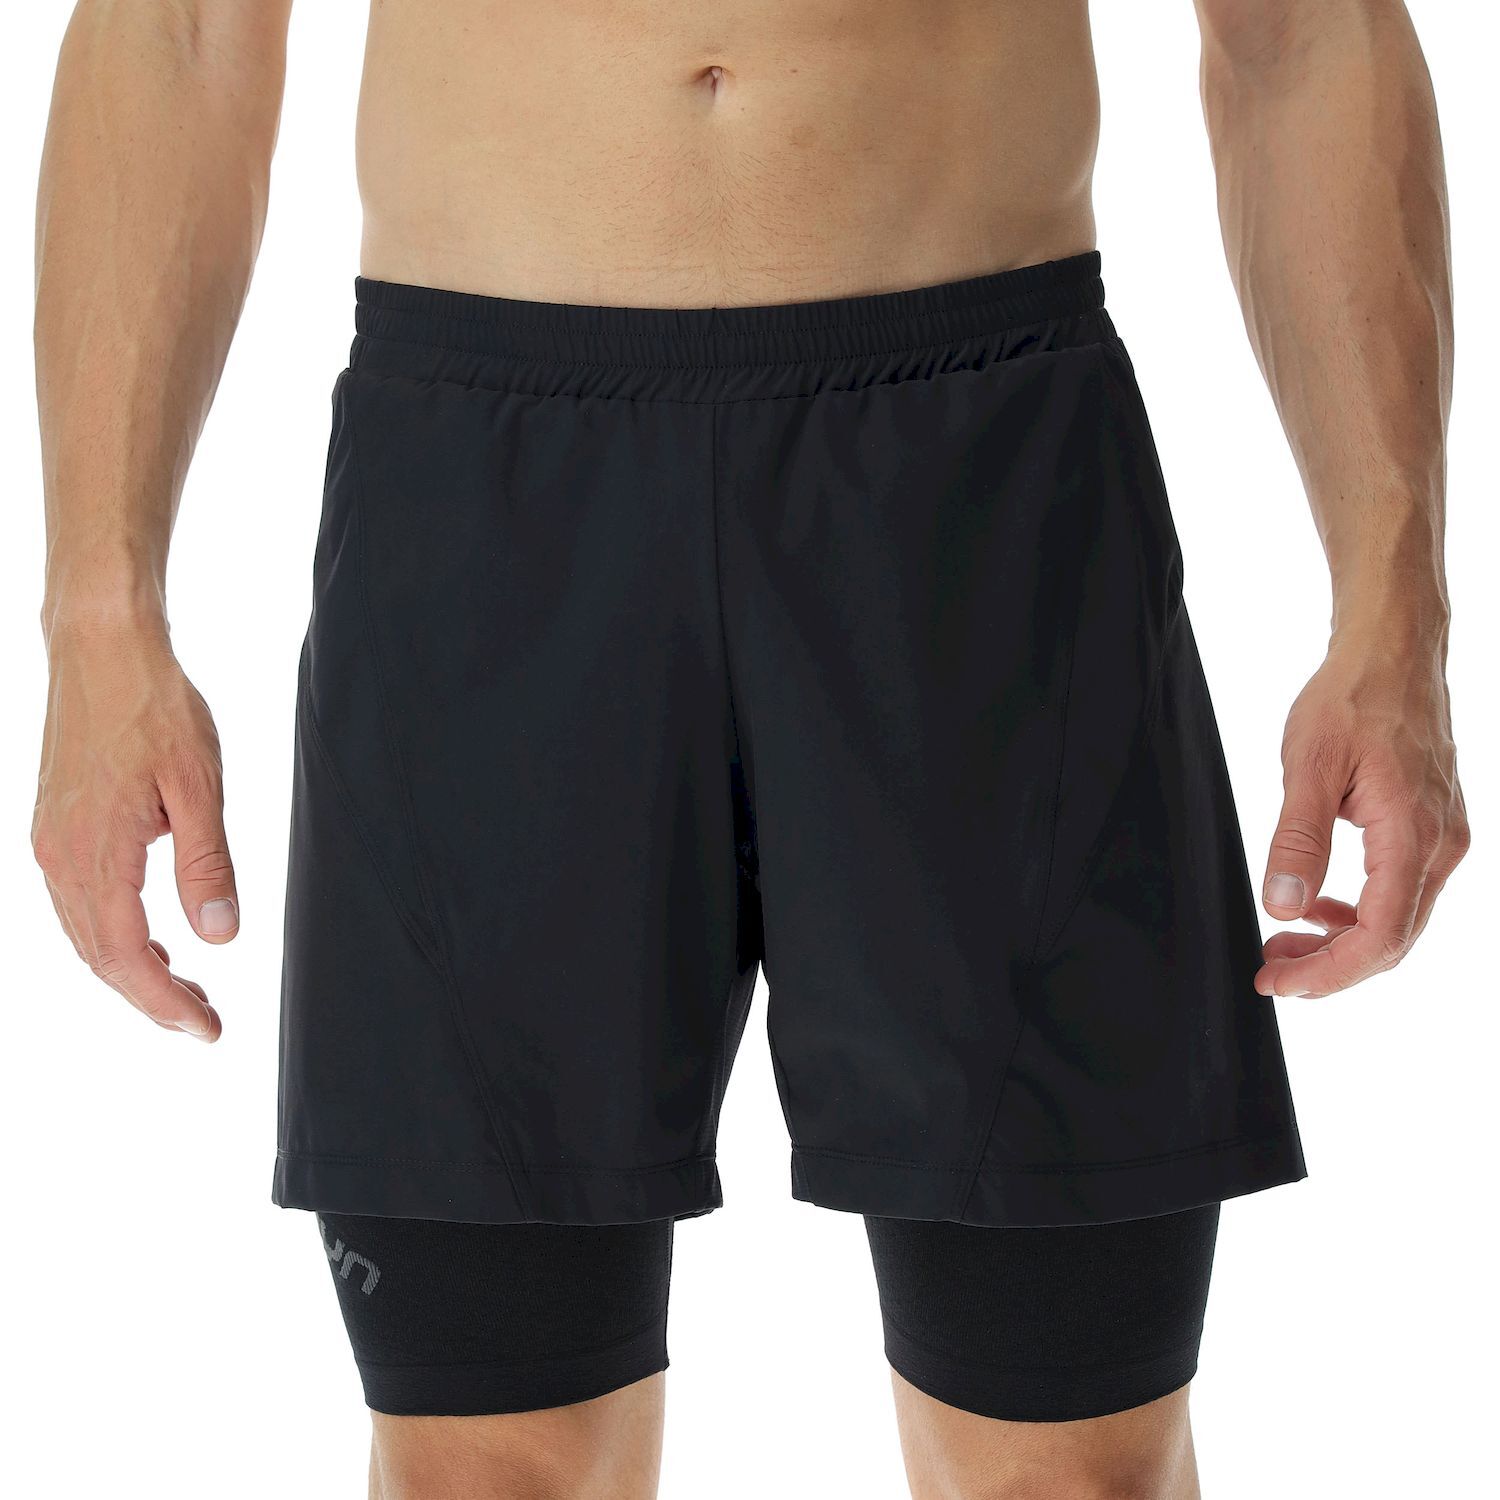 Uyn Running Exceleration Ow Performance 2In1 Short - Pantalones cortos de running - Hombre